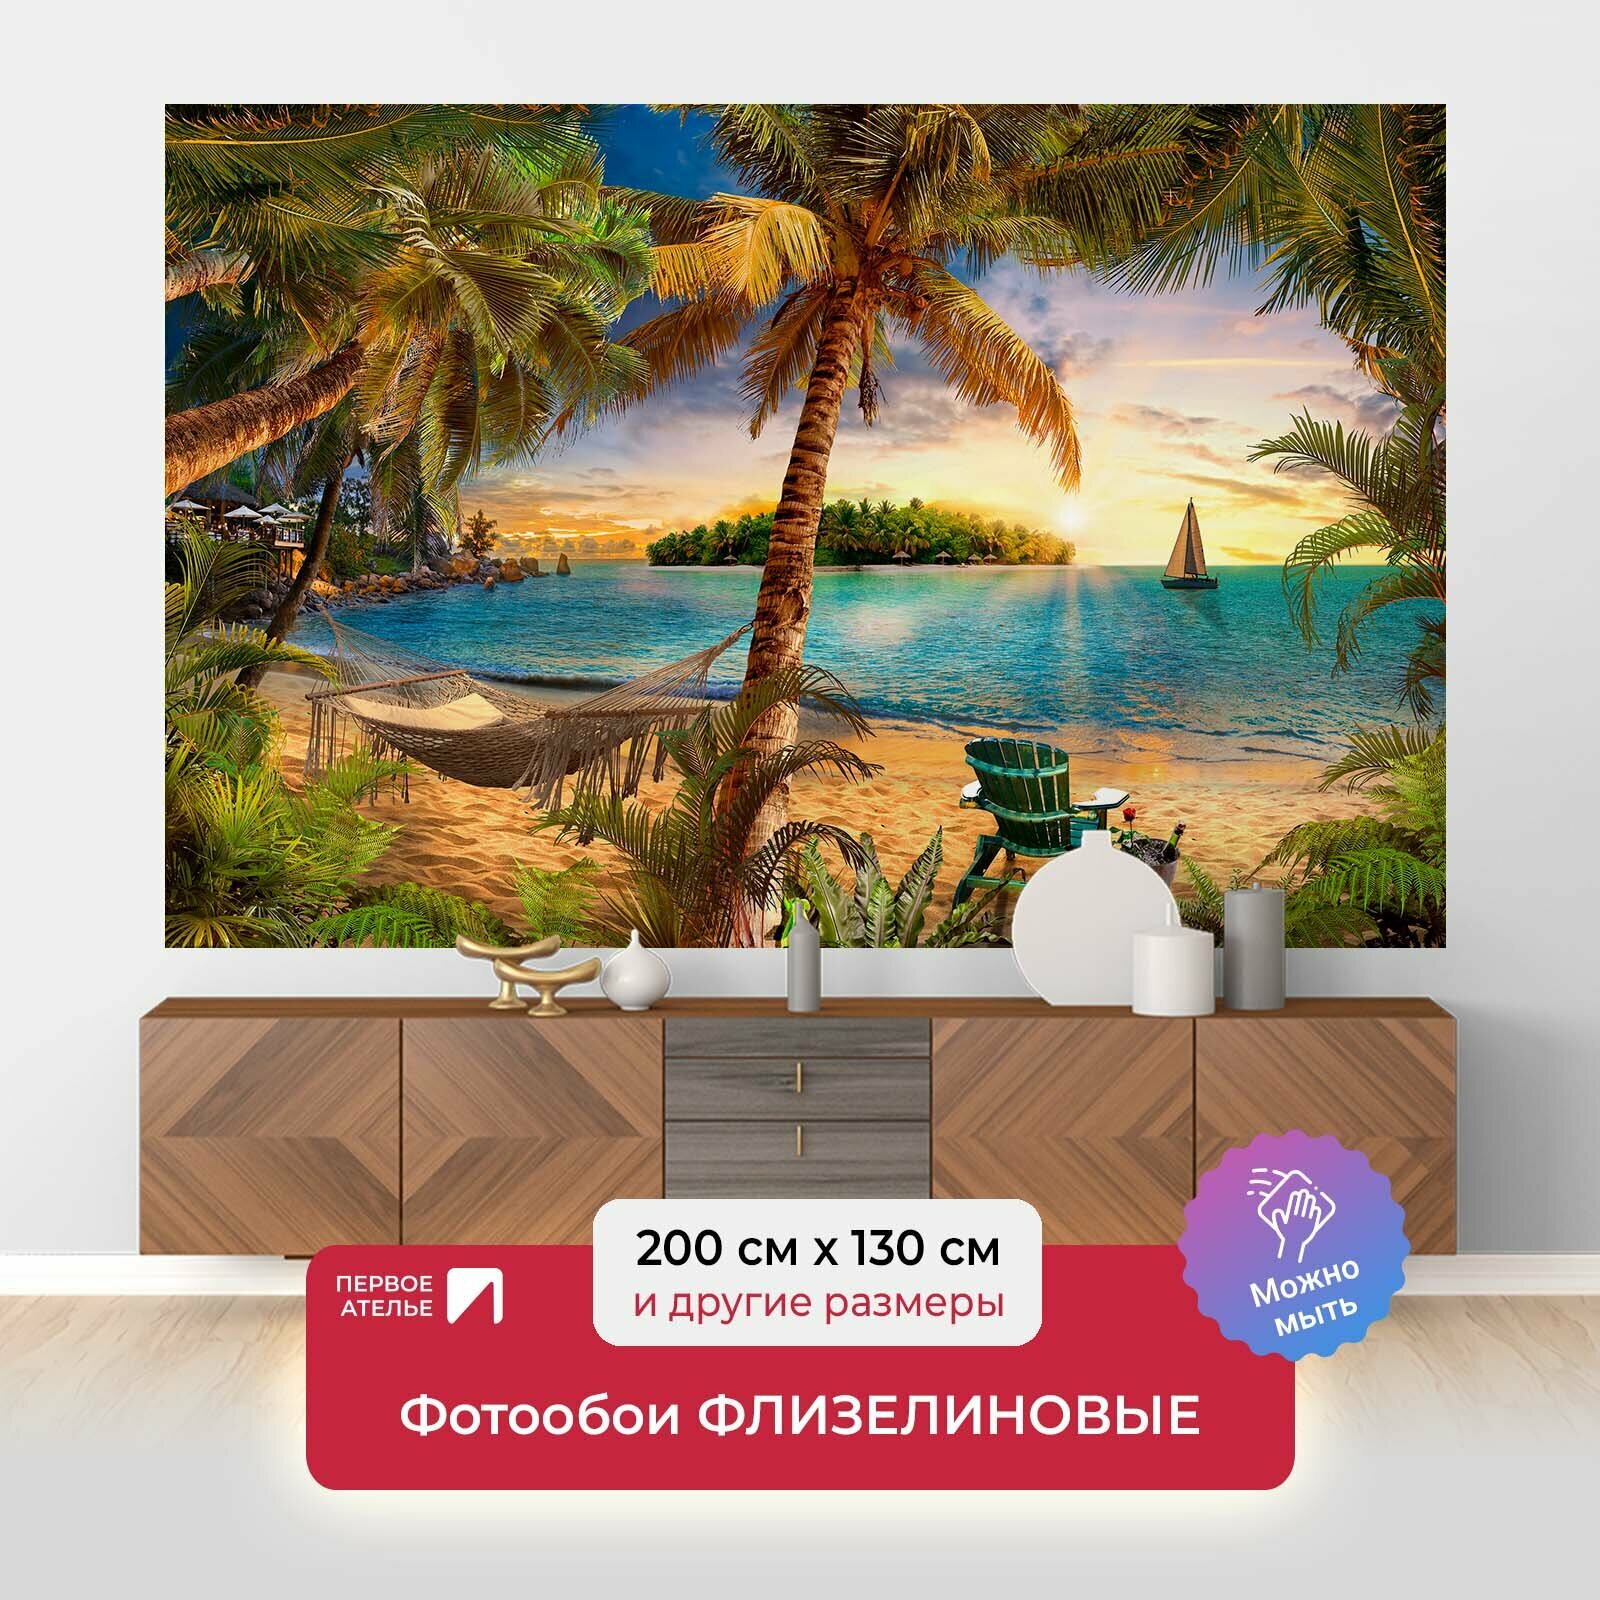 Фотообои на стену первое ателье "Пляж на закате" 200х130 см (ШхВ), флизелиновые Premium